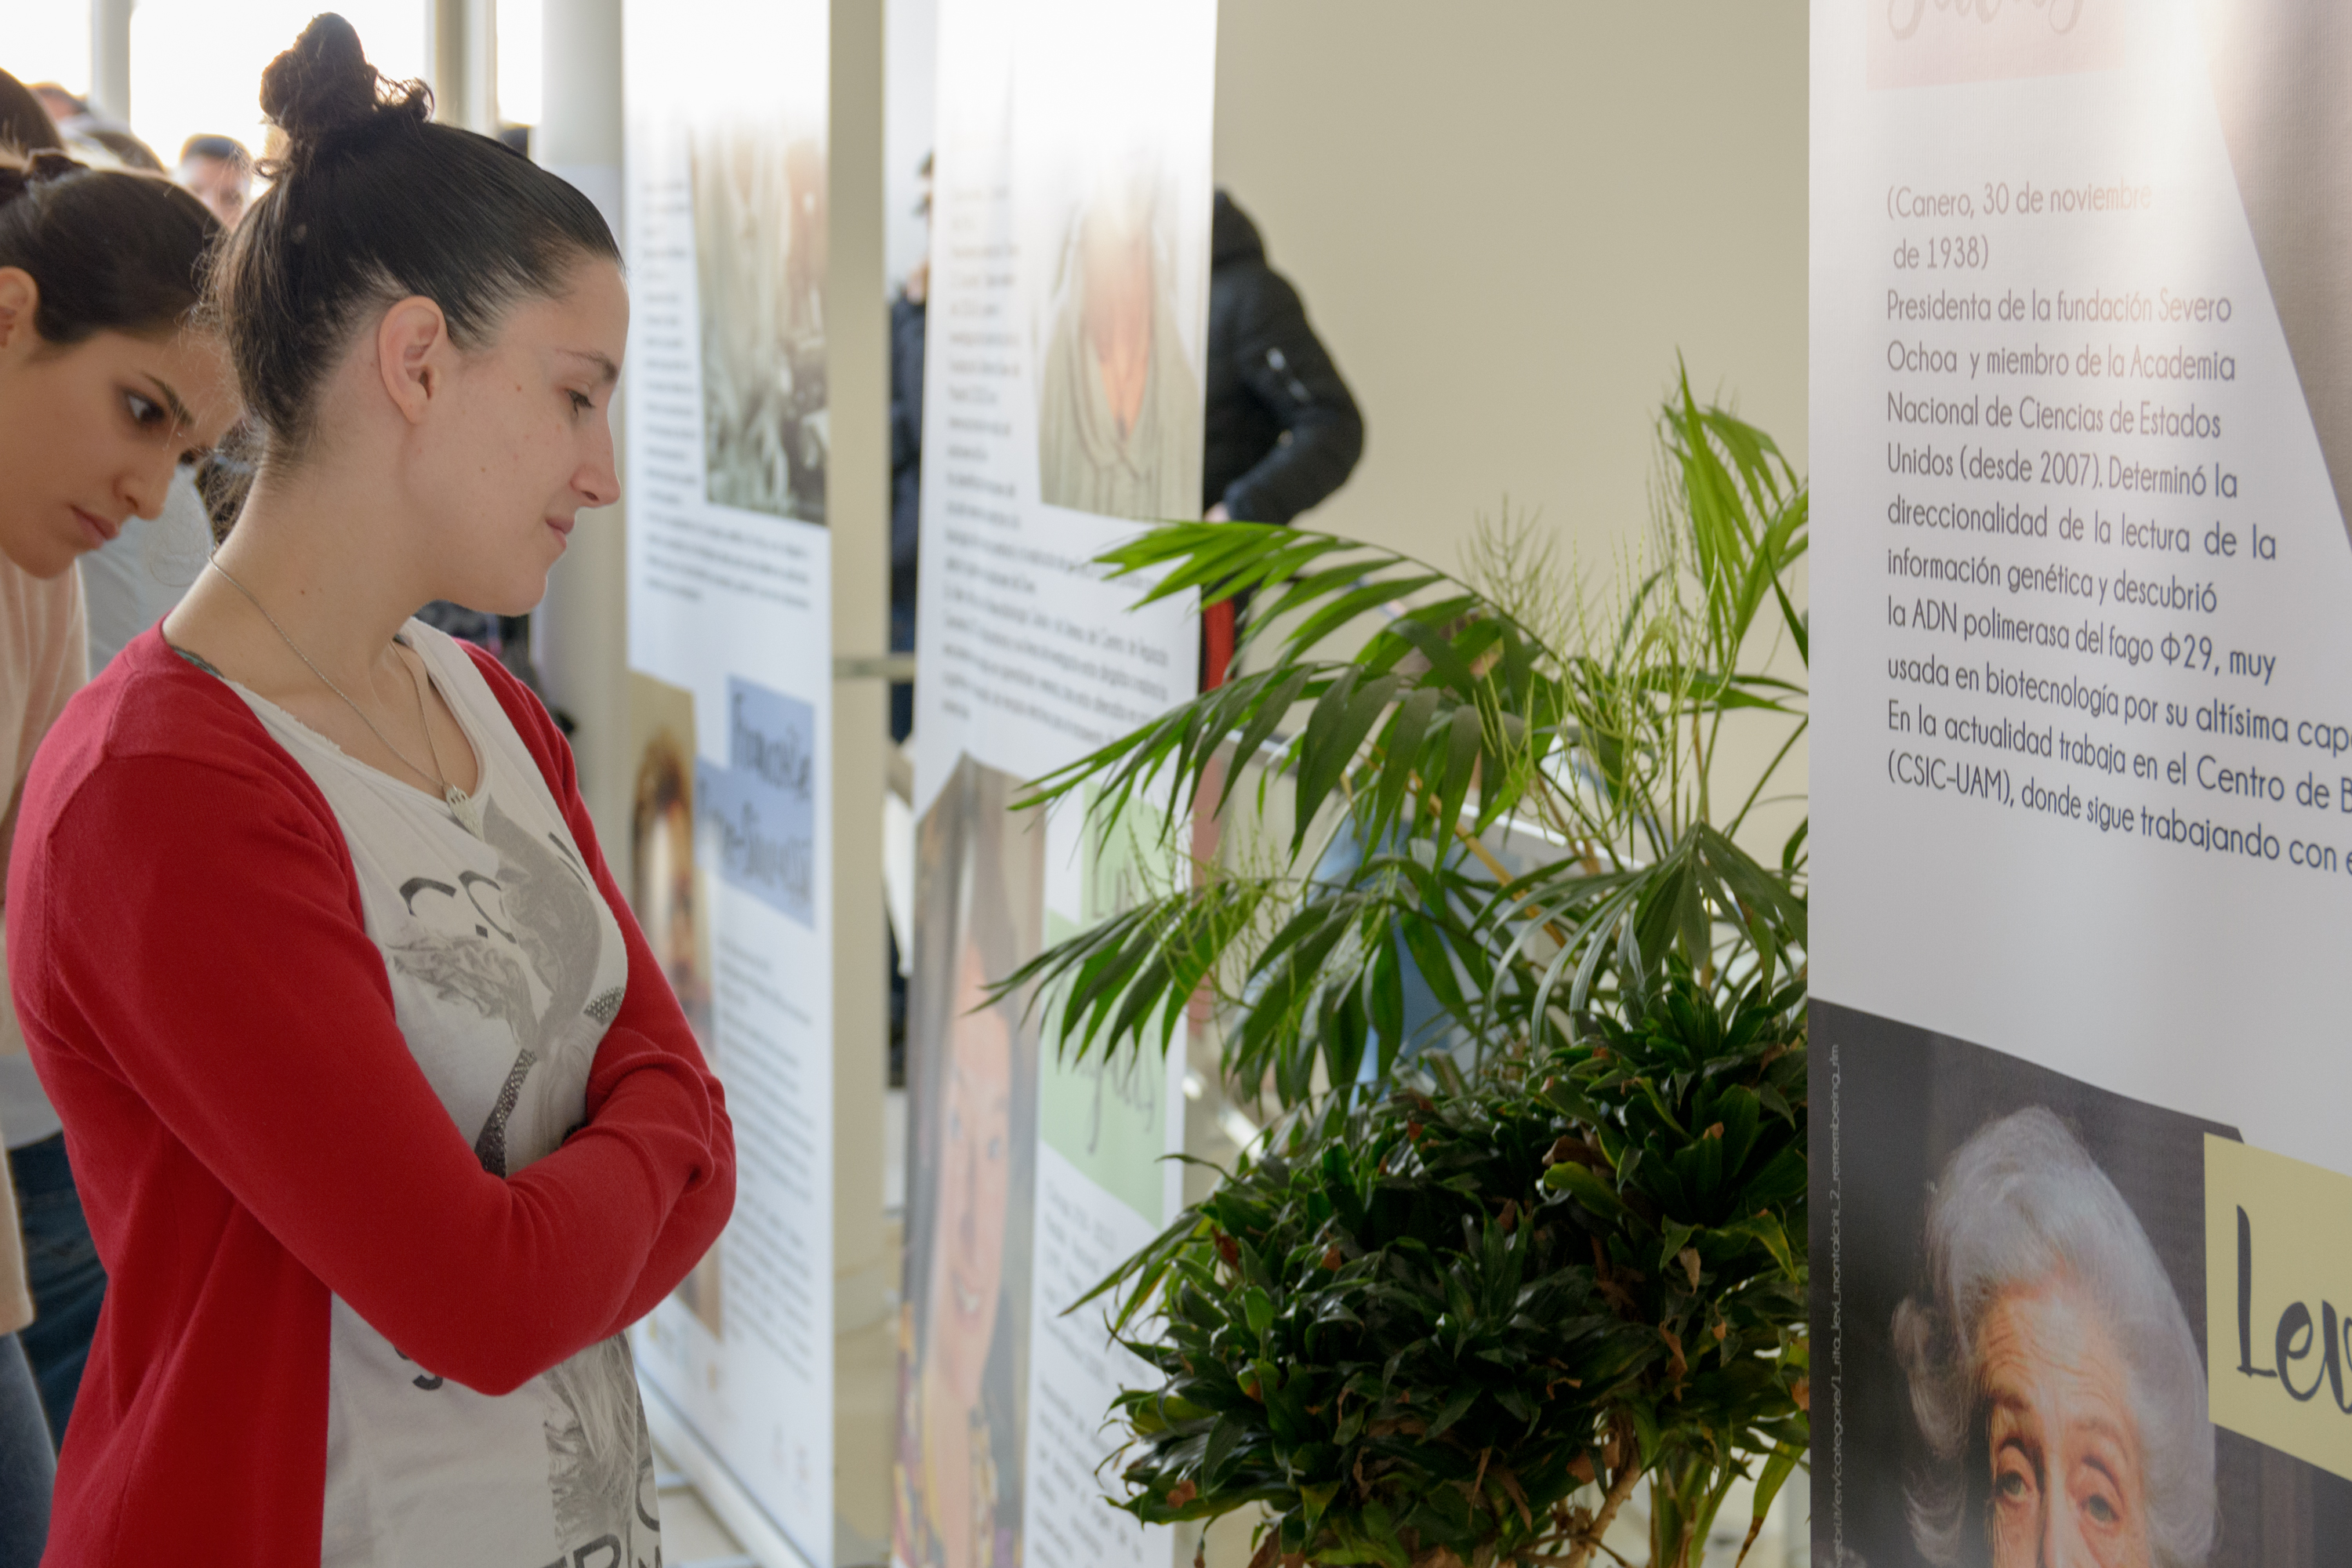 La Universidad de Salamanca se suma a las actividades de celebración del Día Internacional de la Mujer y la Niña en la Ciencia con una exposición de fotografía